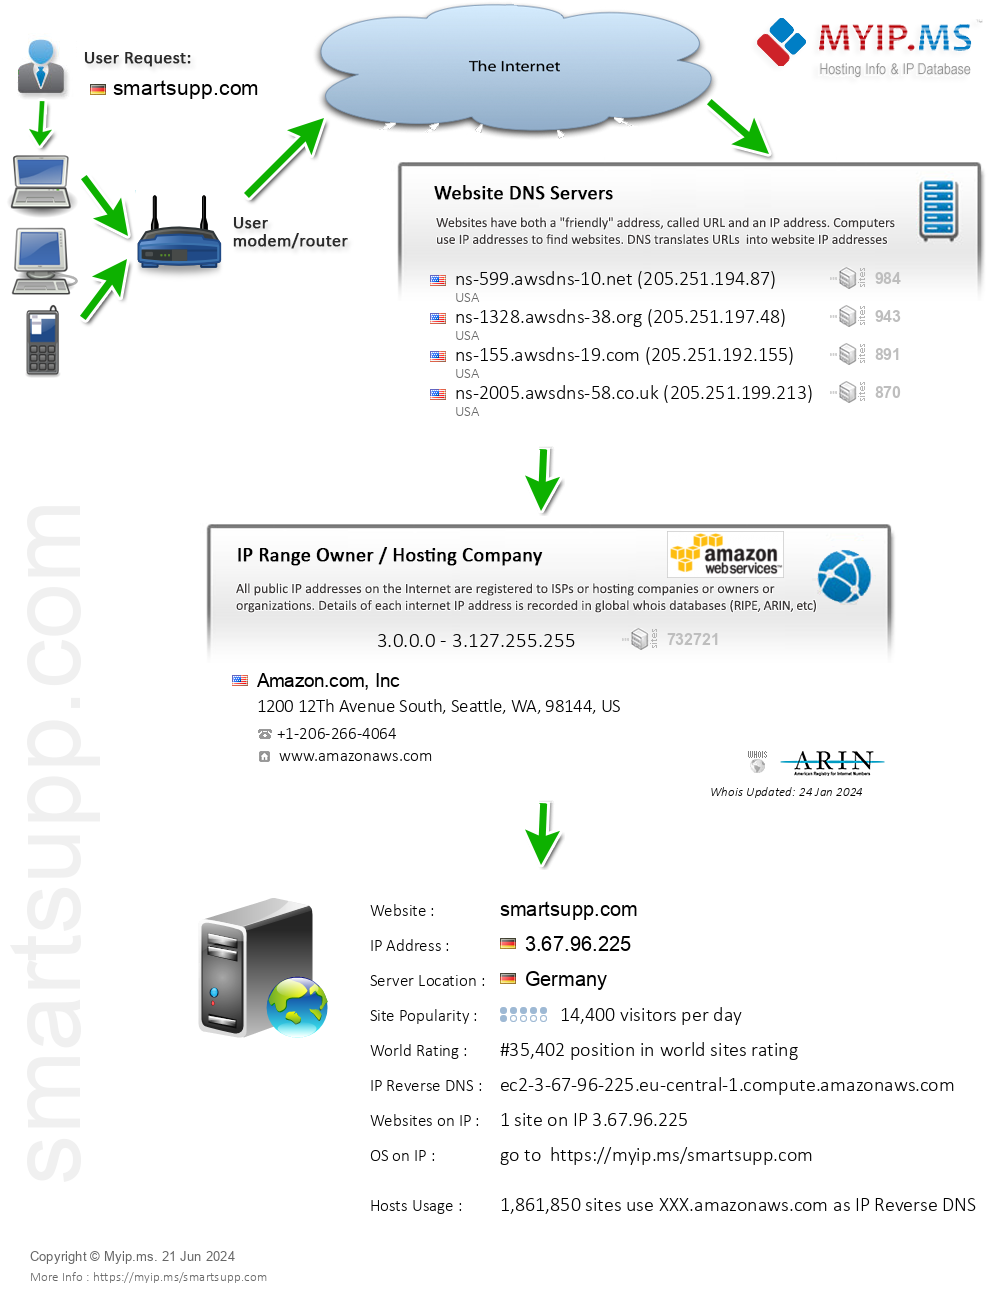 Smartsupp.com - Website Hosting Visual IP Diagram